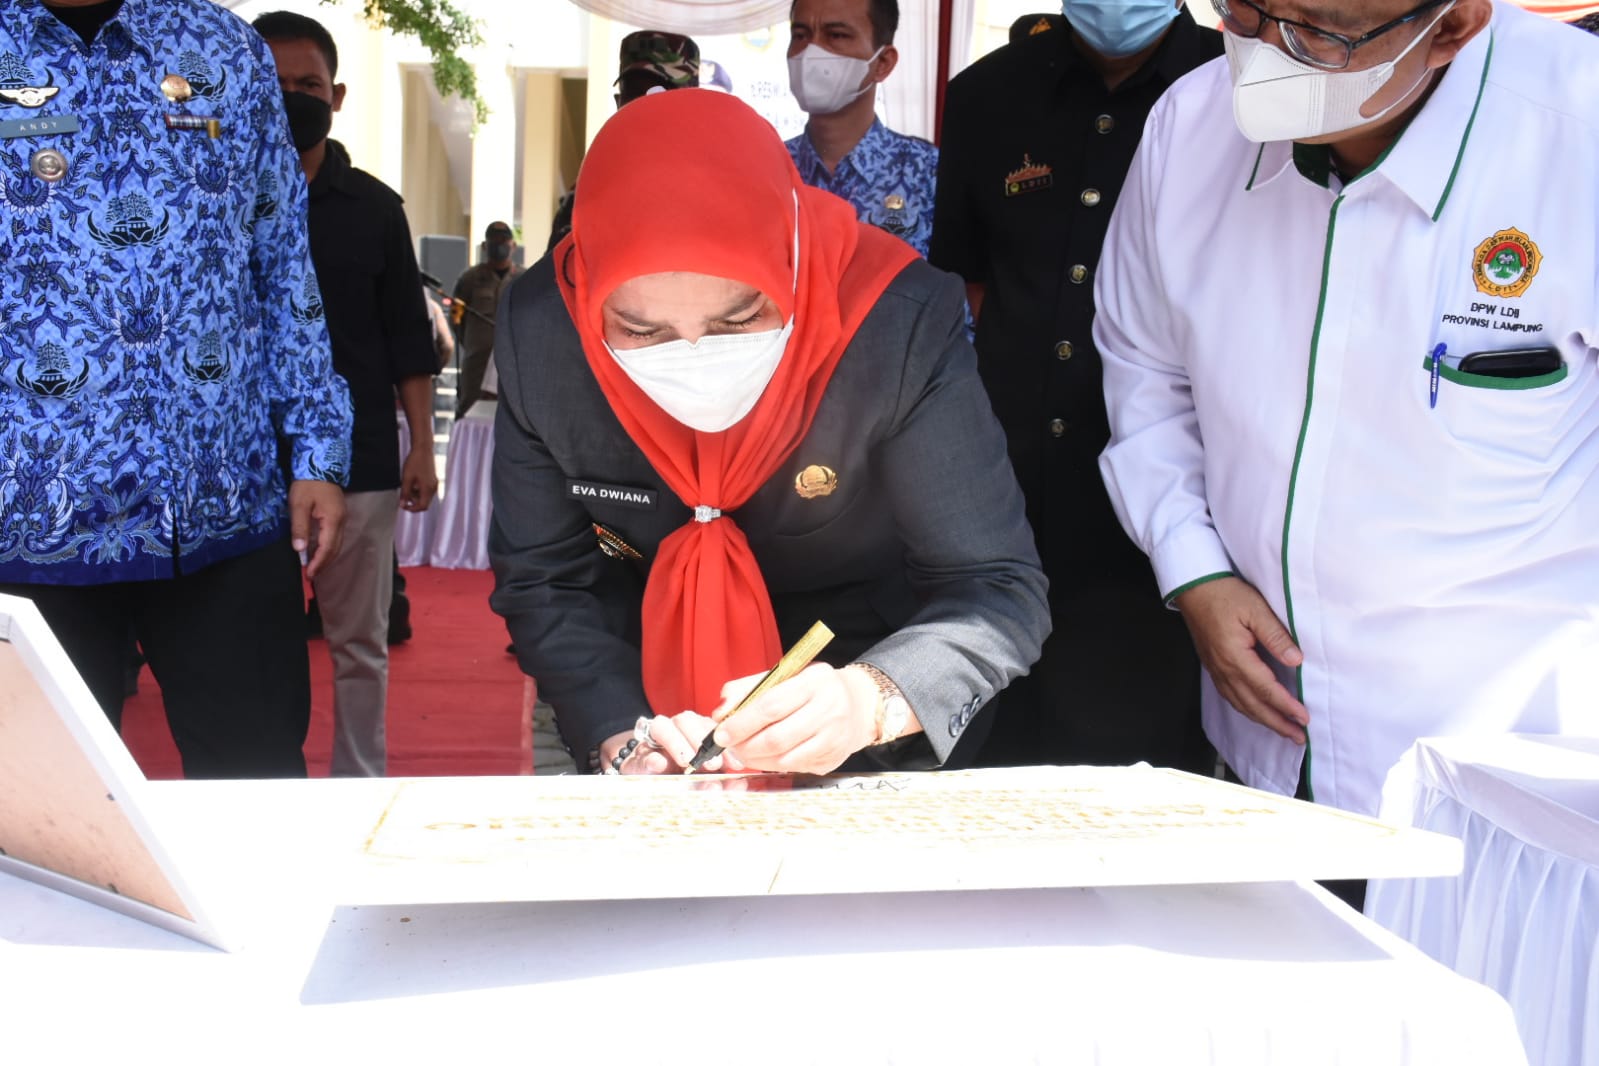 RESMIKAN. Walikota Bandarlampung, Eva Dwiana saat menandatangani dinasti pada meresmikan masjid LDII. FOTO. DOK